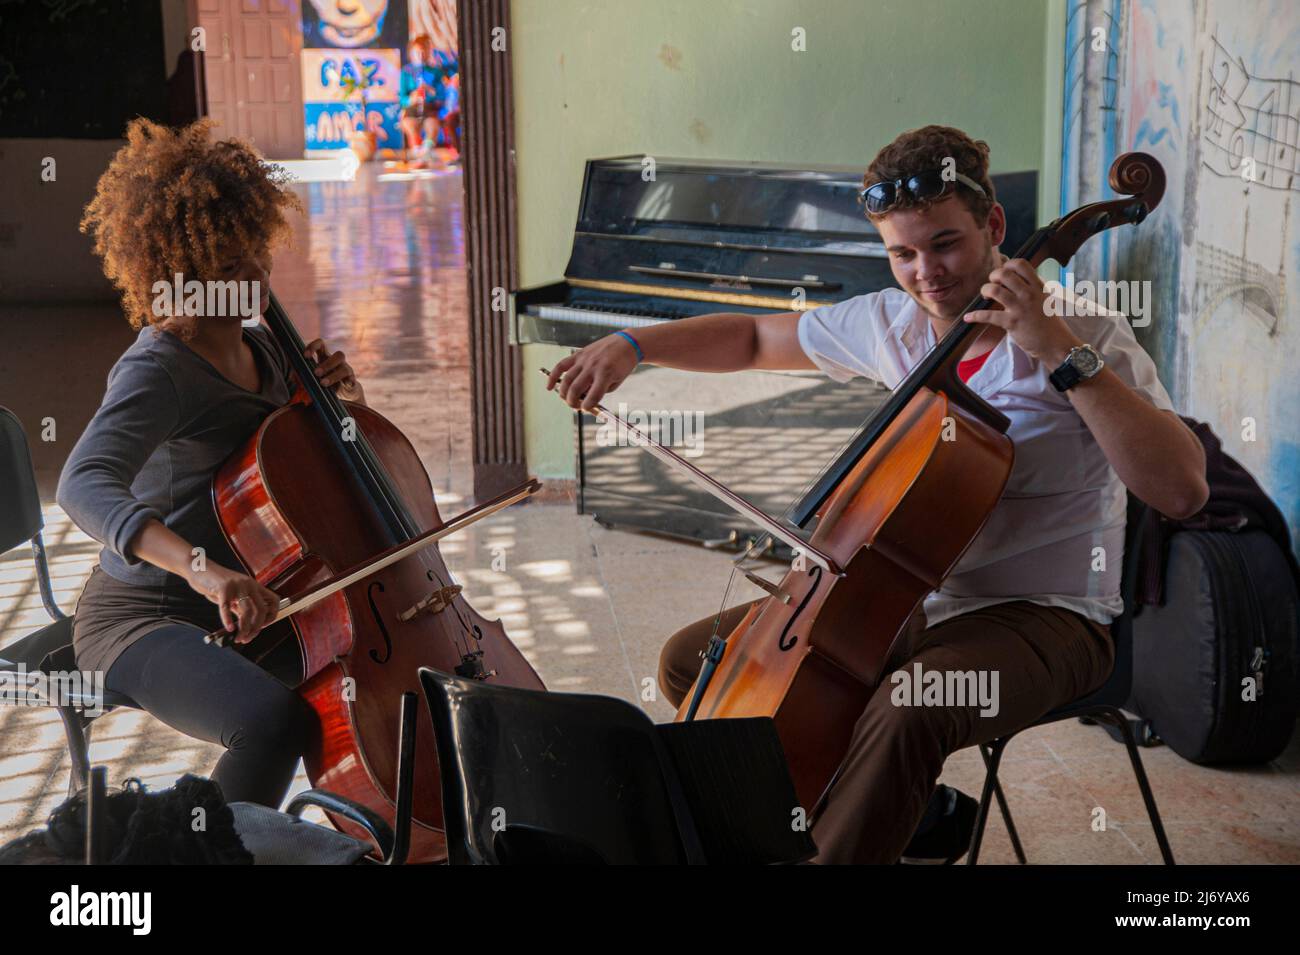 Les jeunes élèves répètent jouer le violoncelle dans une école de Matanzes, Cuba, avec un tableau de John Lennon et Yoko Ono sur le mur derrière eux. Banque D'Images